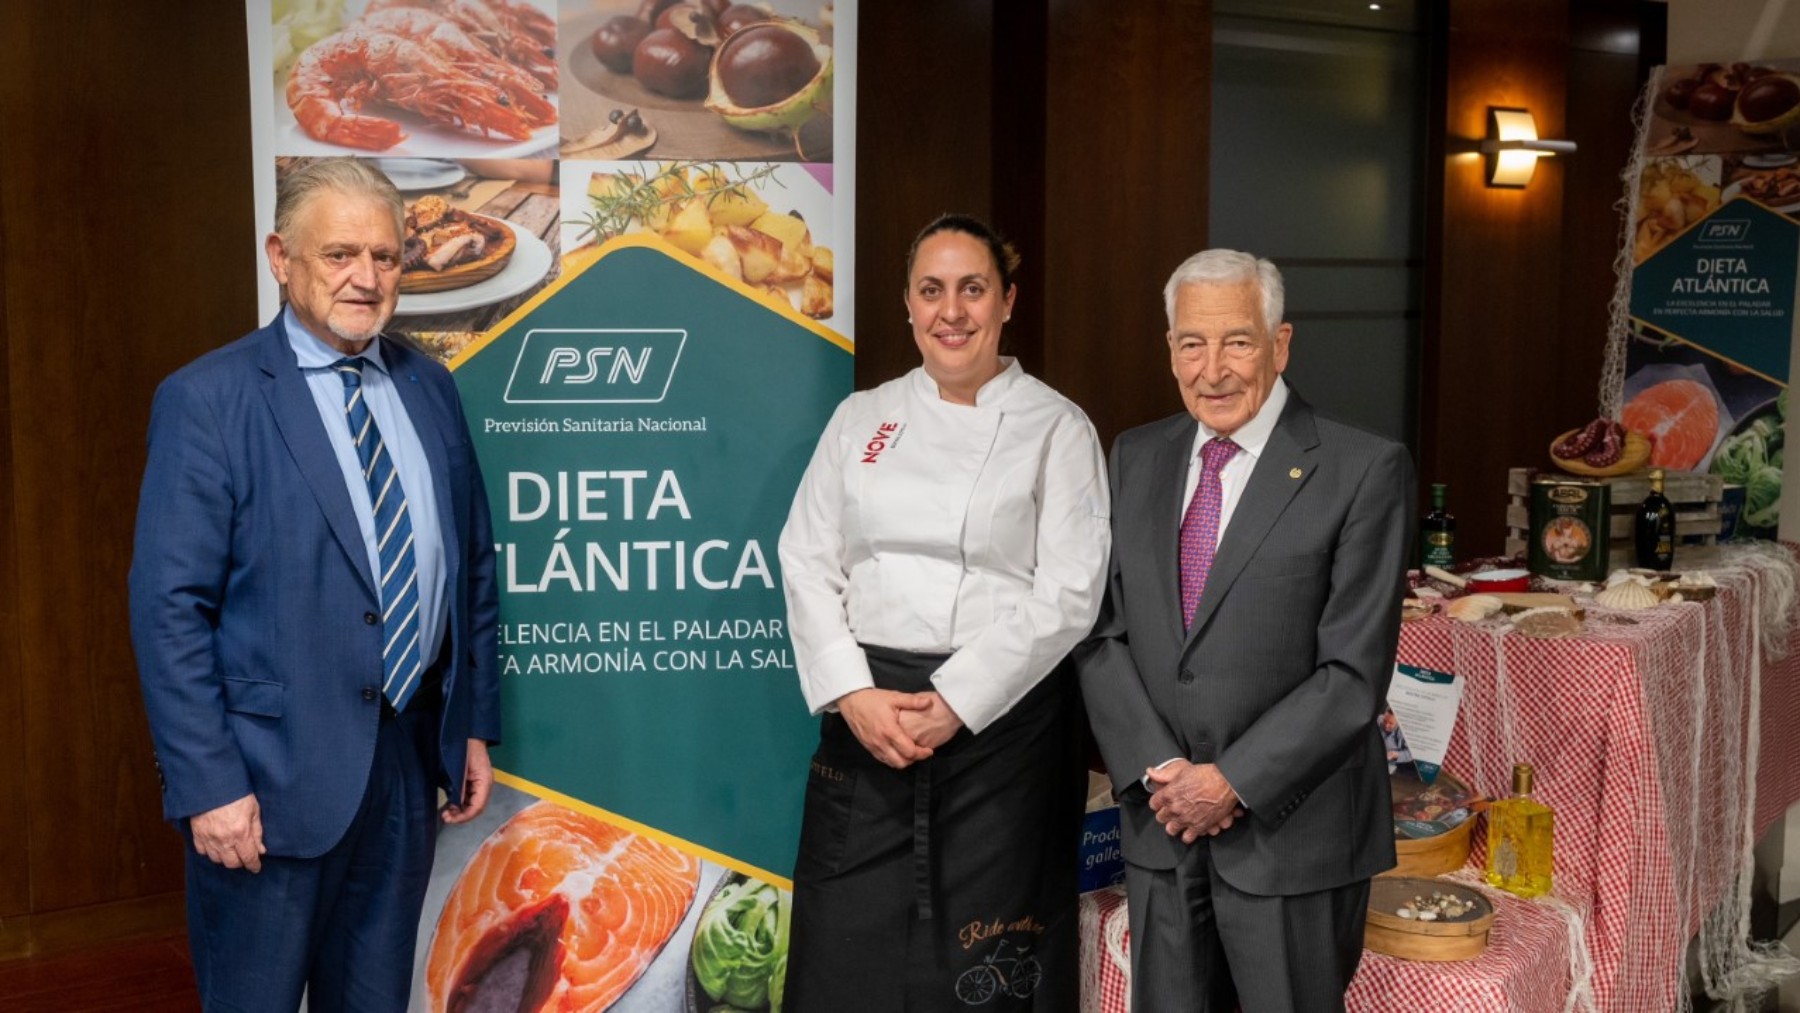 Presentación de la segunda jornada sobre la Dieta Atlántica de PSN.